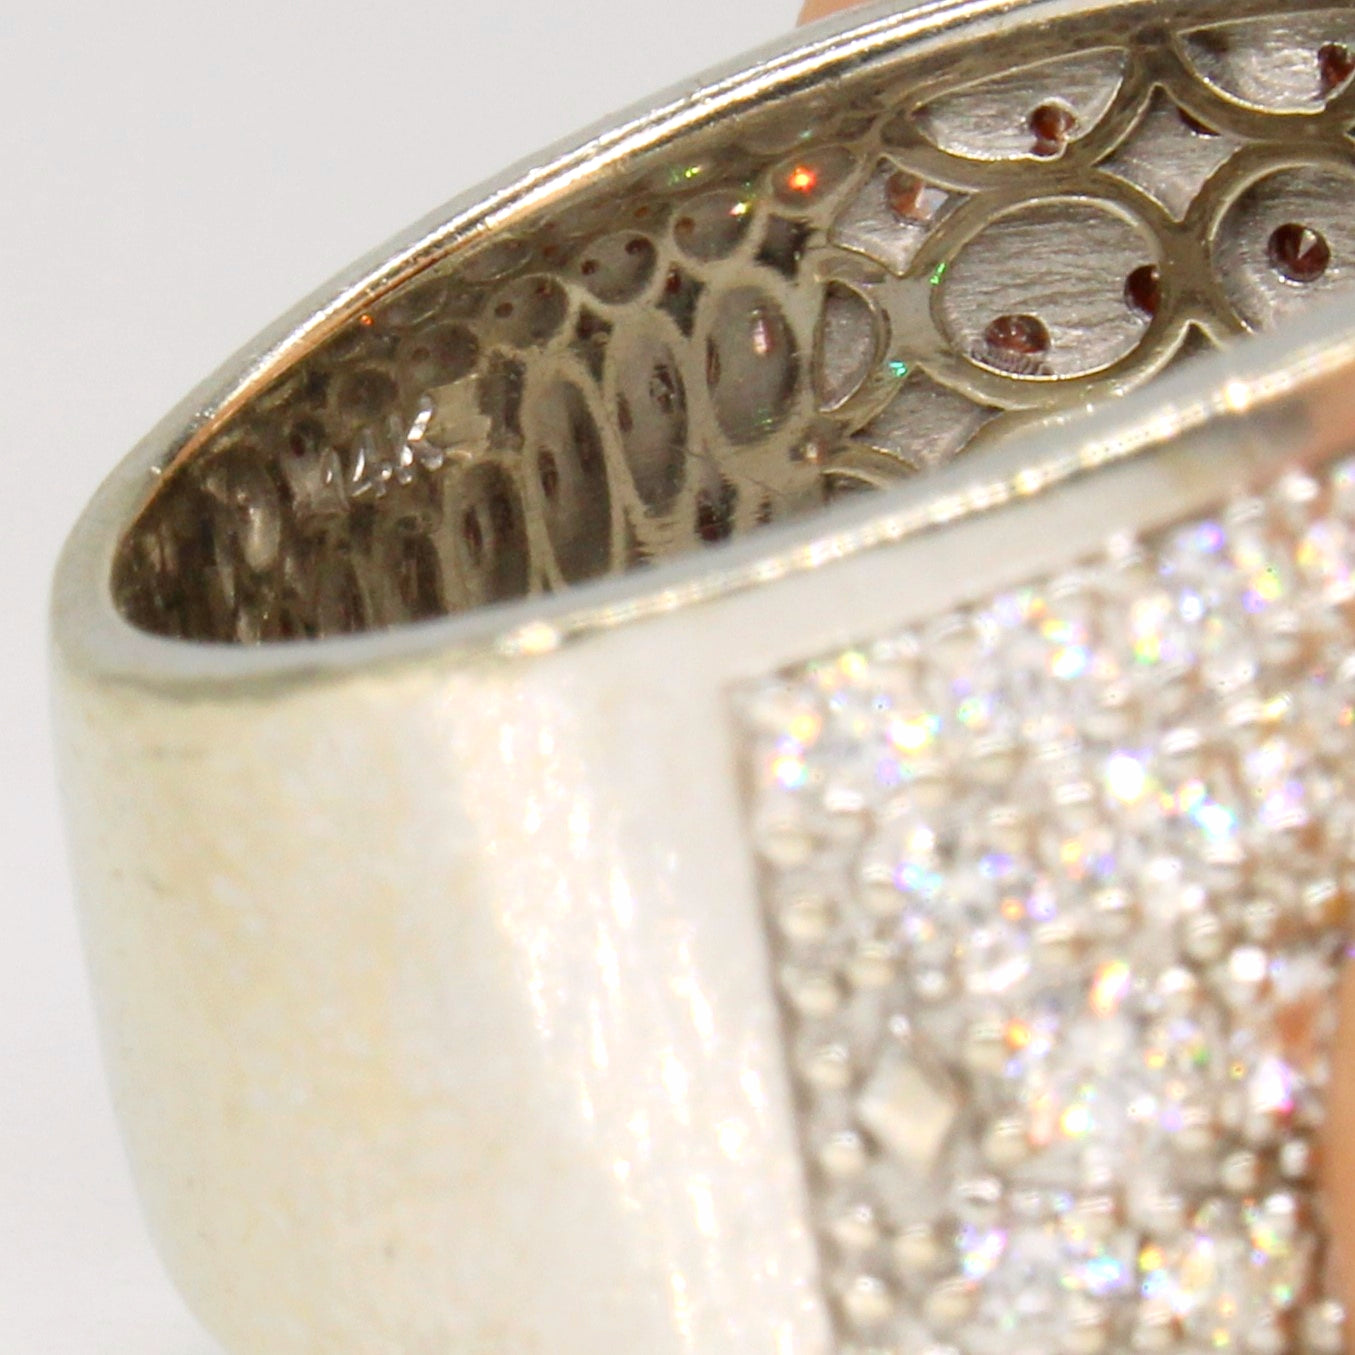 Micro Pave Diamond 14k Ring | 2.00ctw | SZ 6.5 |